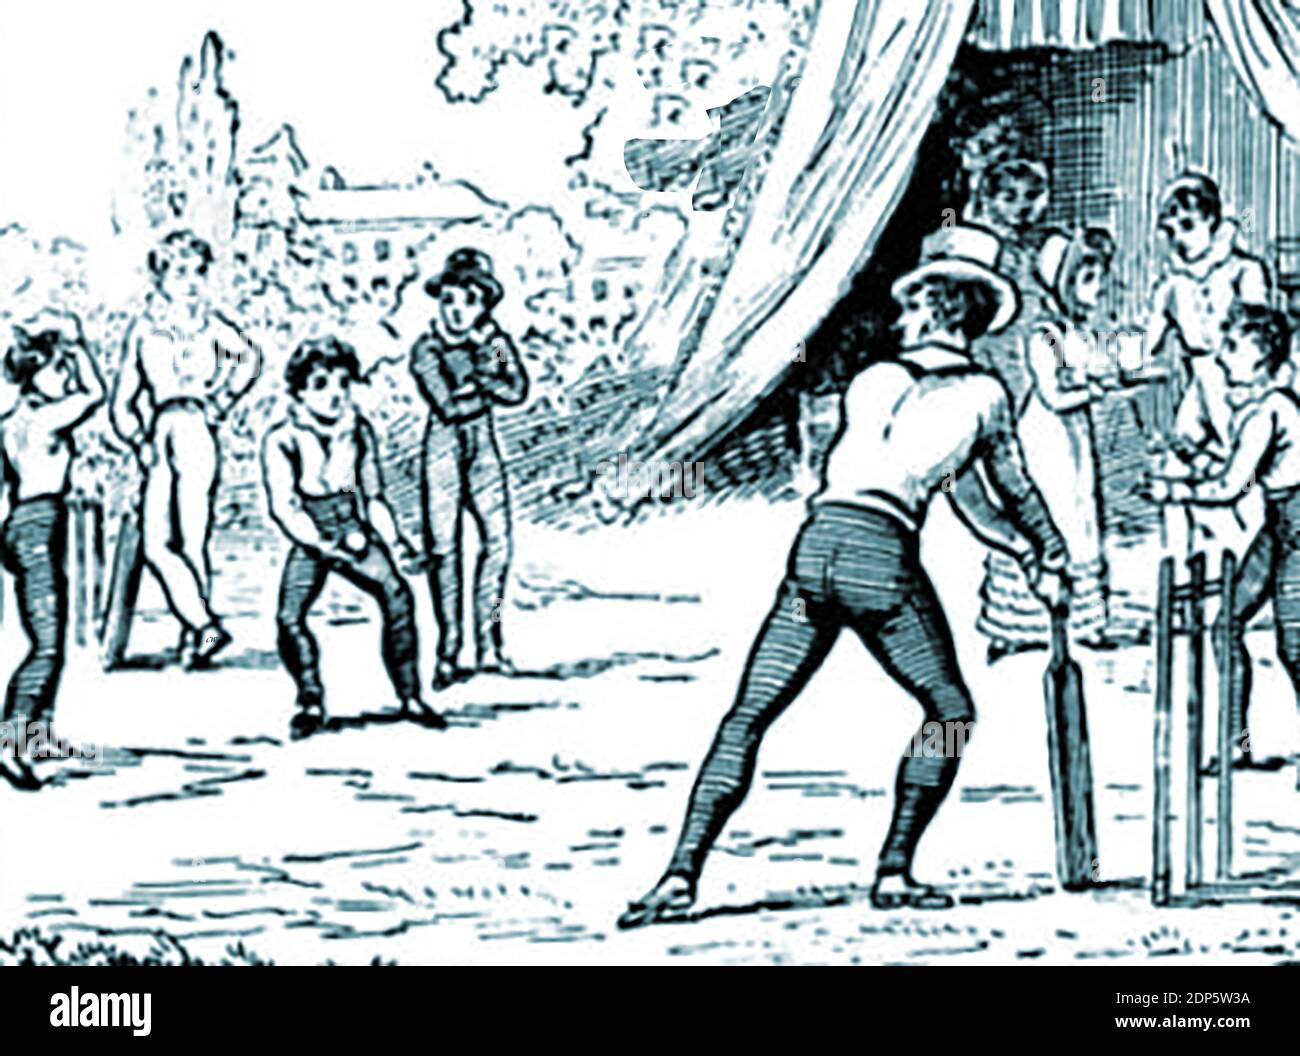 Hombres y niños jugando un juego de cricket alrededor de 1770 en una feria de campo inglesa - el deporte tiene una larga historia con la primera mención conocida de que se hizo en 1550 en evidencia dada en un caso legal en Guildford, Surrey, sobre el uso de una parcela de tierra . Un forense John Derrick, testificó que había jugado cricket en esa tierra como un niño. Los jugadores en esta imagen parecen hasta la fecha después de la década de 1760 como el balón fue bowled a lo largo del suelo hasta que el deporte fue considerado no sólo una actividad de ocio, sino también una oportunidad de juego Foto de stock